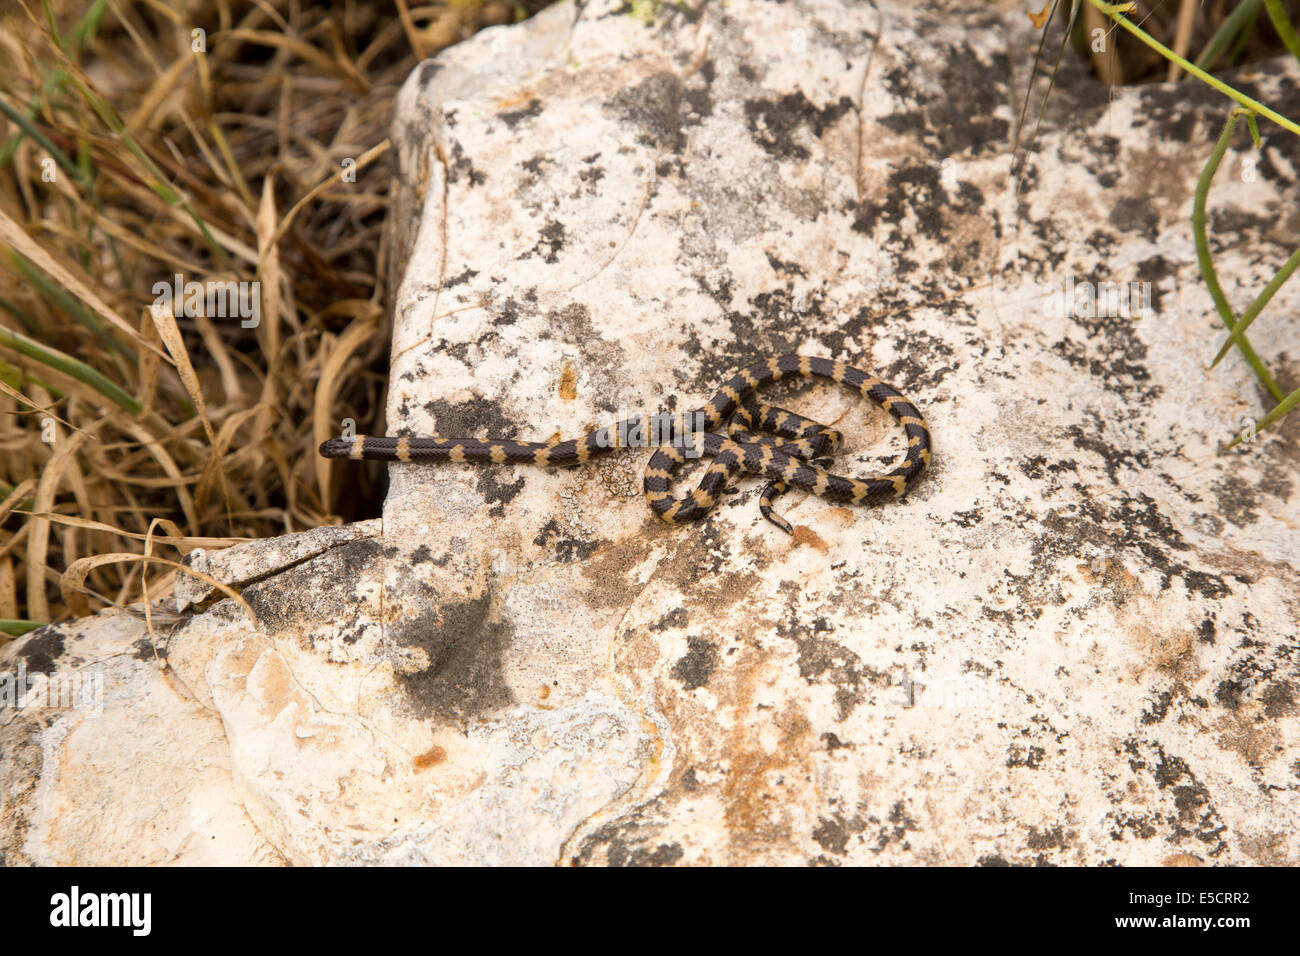 Muellers zweiköpfige Schlange (Micrelaps Muelleri) eine giftigen hinten-fanged Atractaspidid Arten endemisch in den Nahen Osten. Eunhye Stockfoto